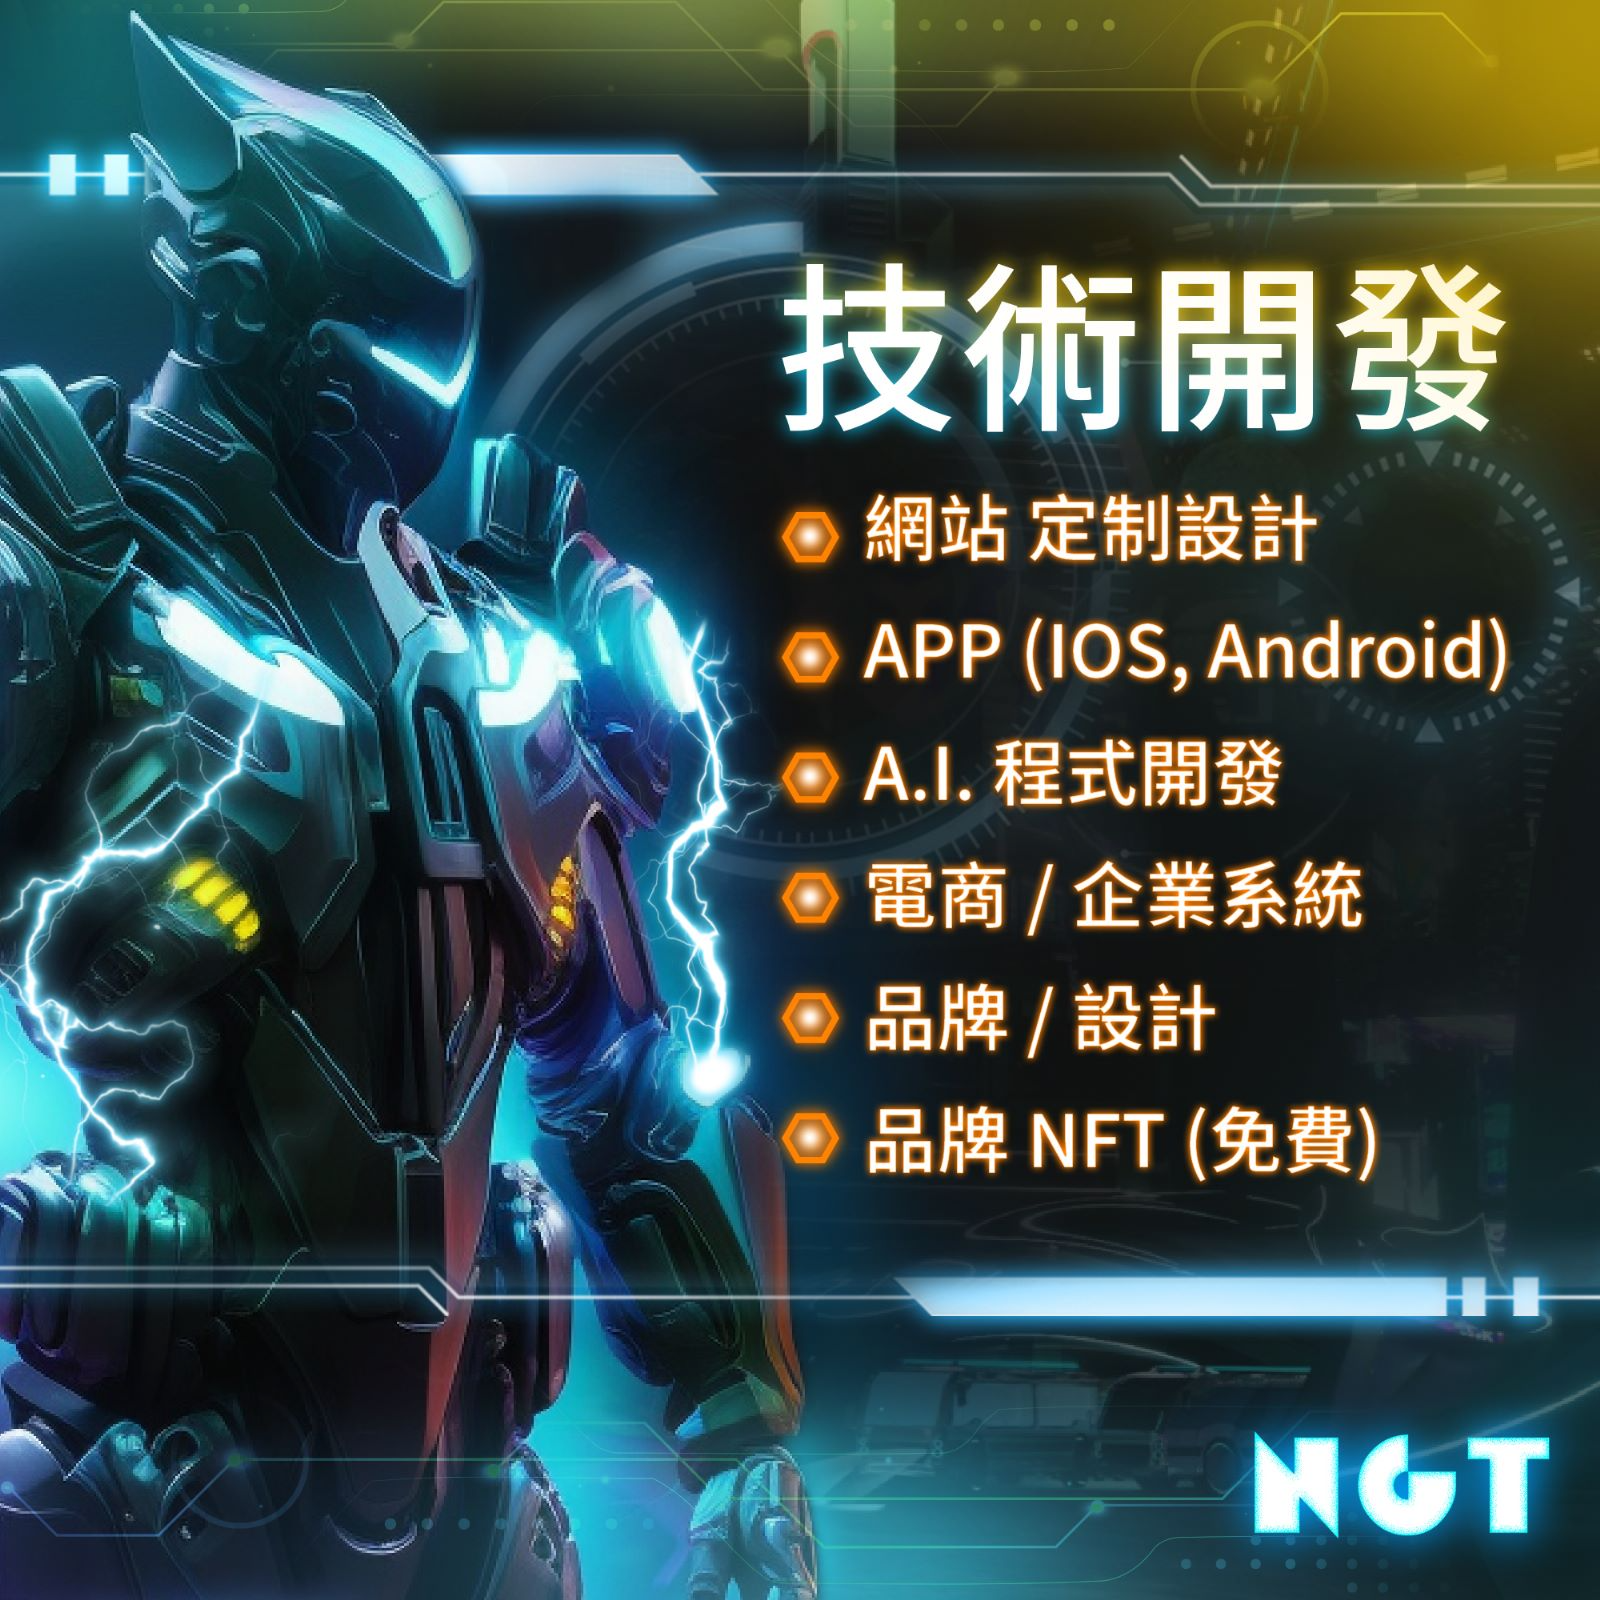 技術開發服務

-網站 定制設計
-APP 應用 (IOS, Android)
-A.I. 程式開發
-電商 / 企業系統
-品牌 / 設計
-品牌 NFT (免費)

📍www.NGT.hk